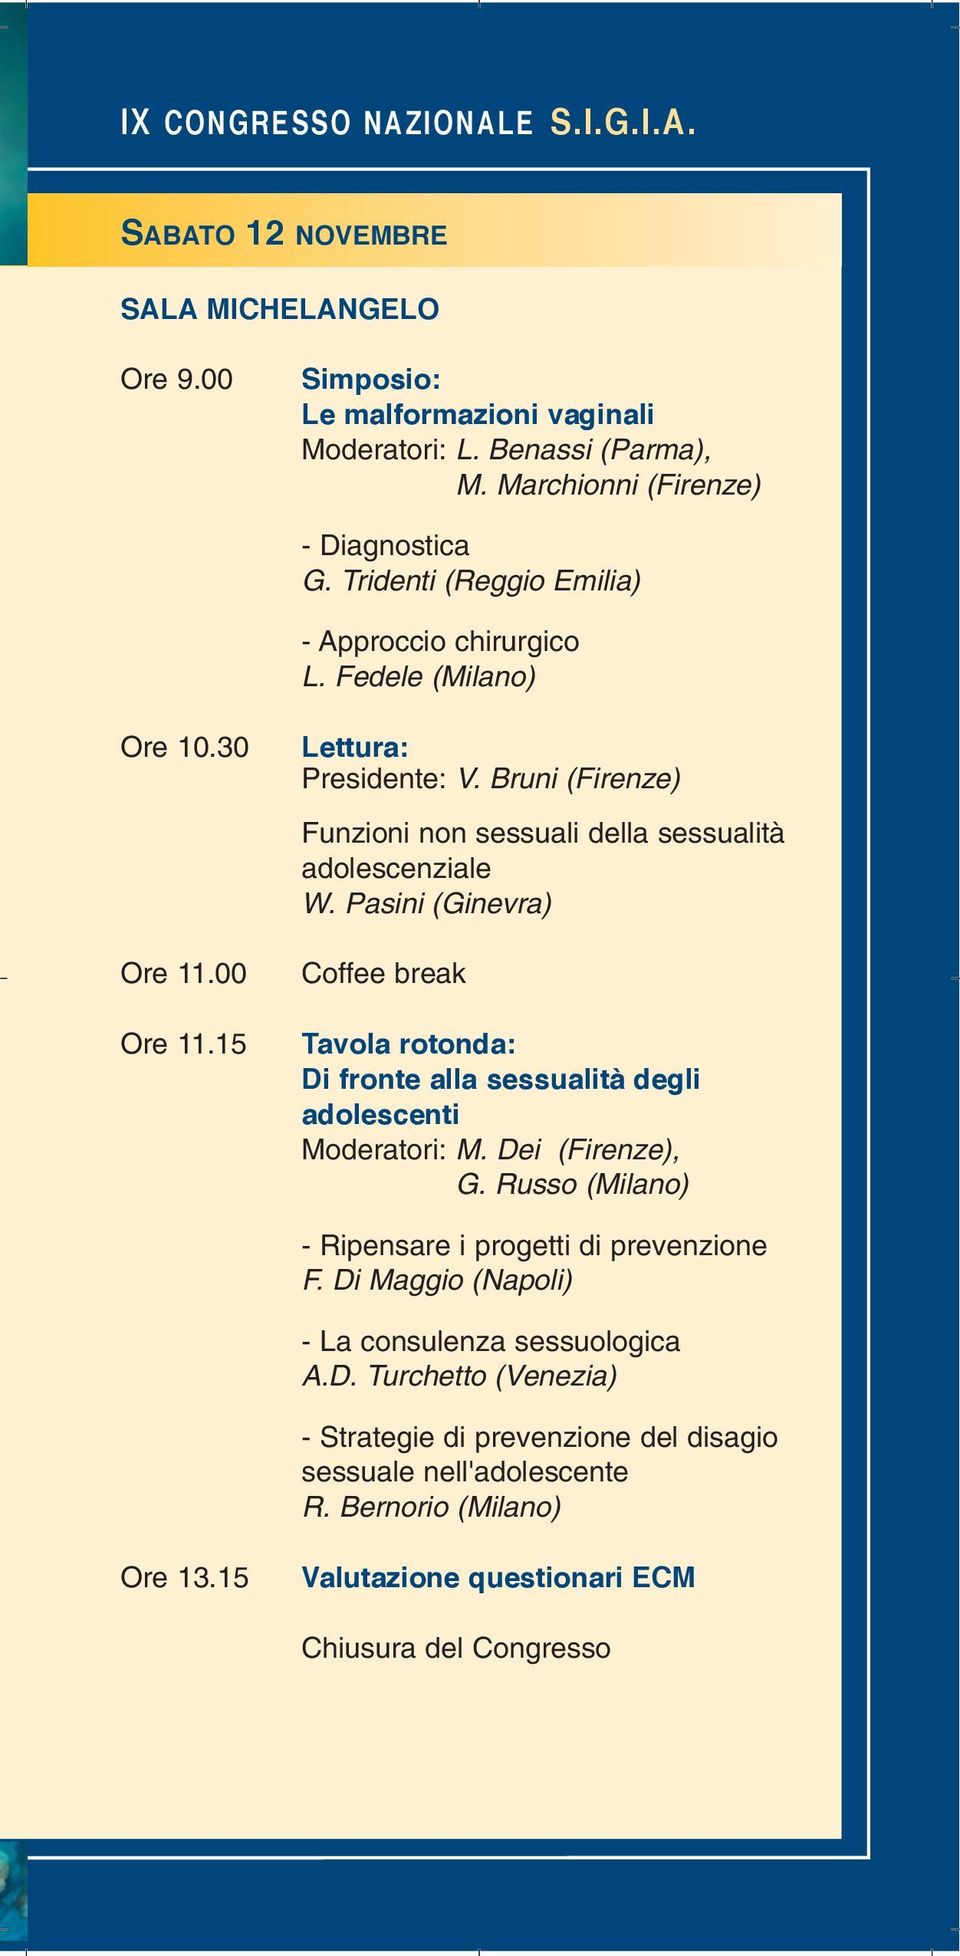 Pasini (Ginevra) Coffee break Tavola rotonda: Di fronte alla sessualità degli adolescenti Moderatori: M. Dei (Firenze), G. Russo (Milano) - Ripensare i progetti di prevenzione F.